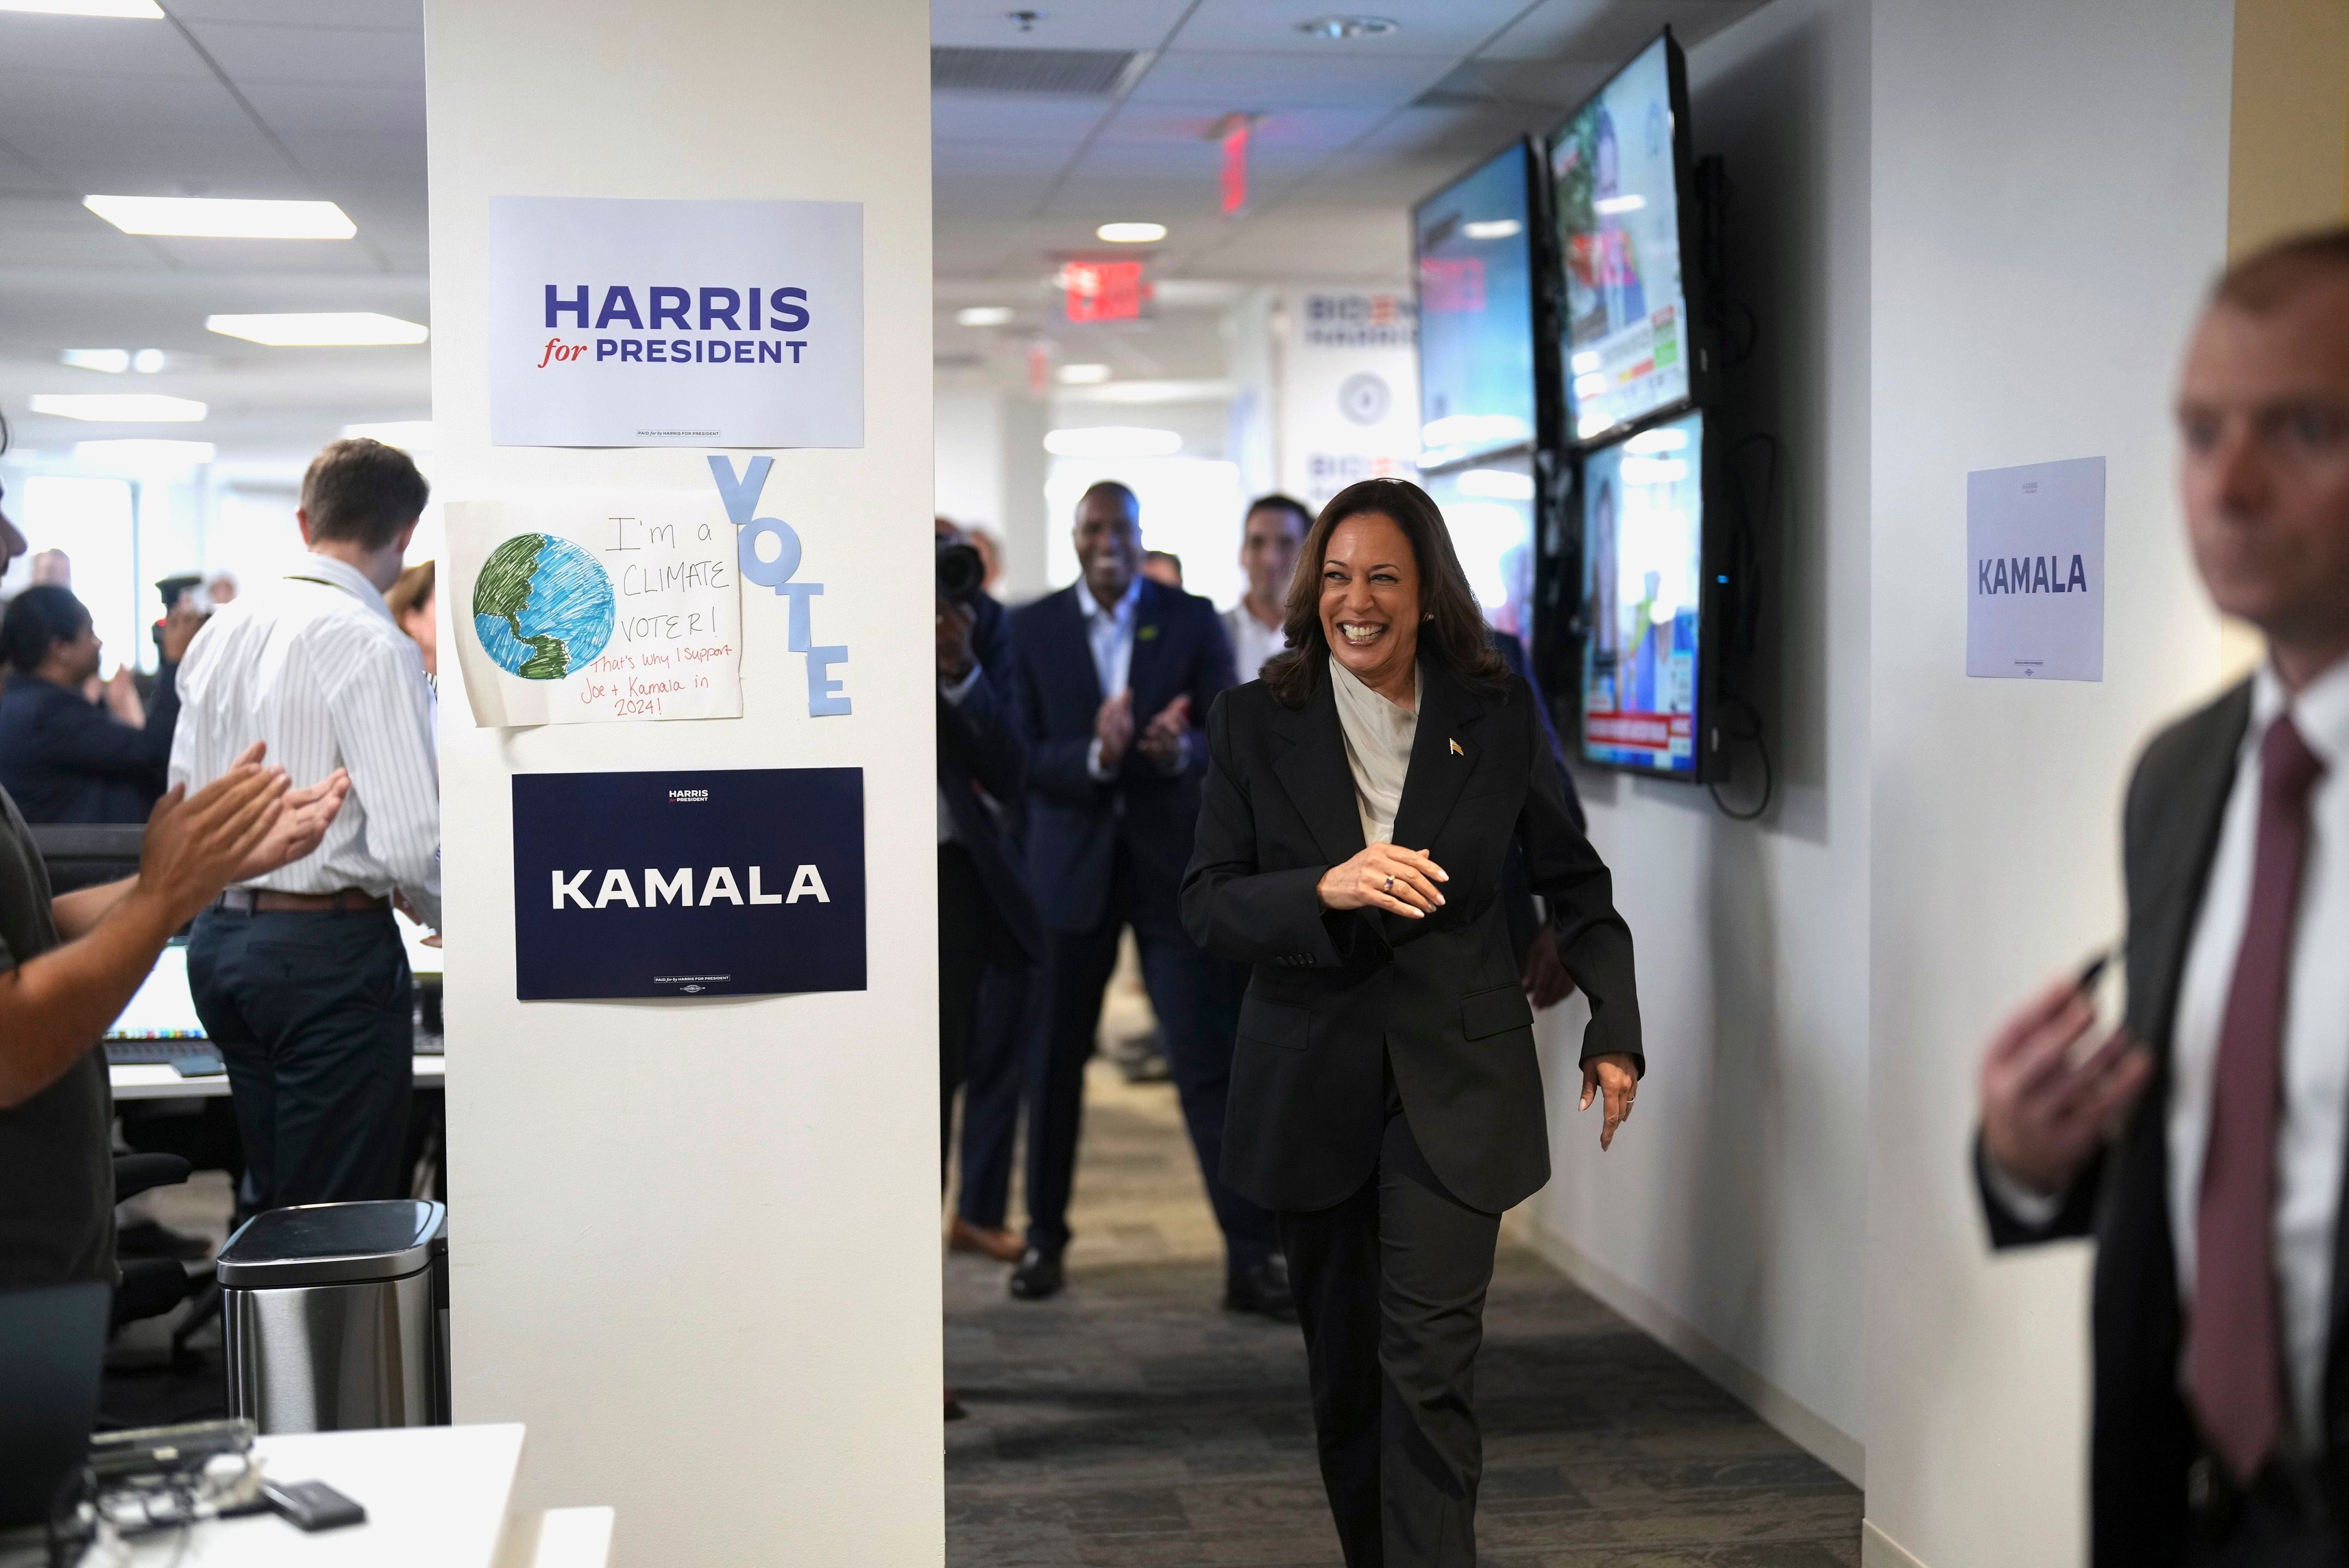 Tiembla, Trump: Kamala Harris bate rércord de recaudación de fondos